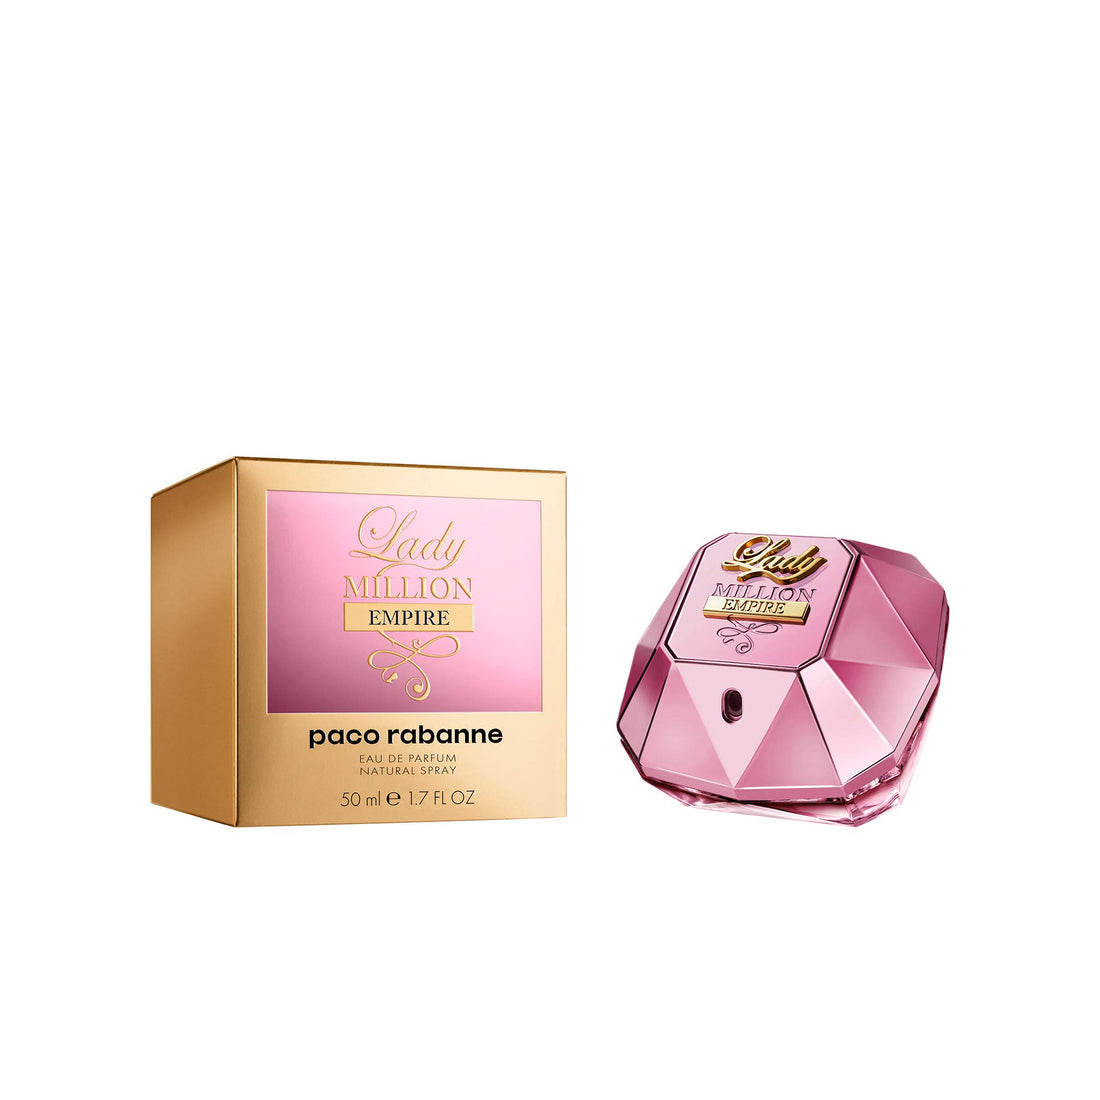 Paco Rabanne - Lady Million Empire Eau De Parfum Vaporizer 50 Ml